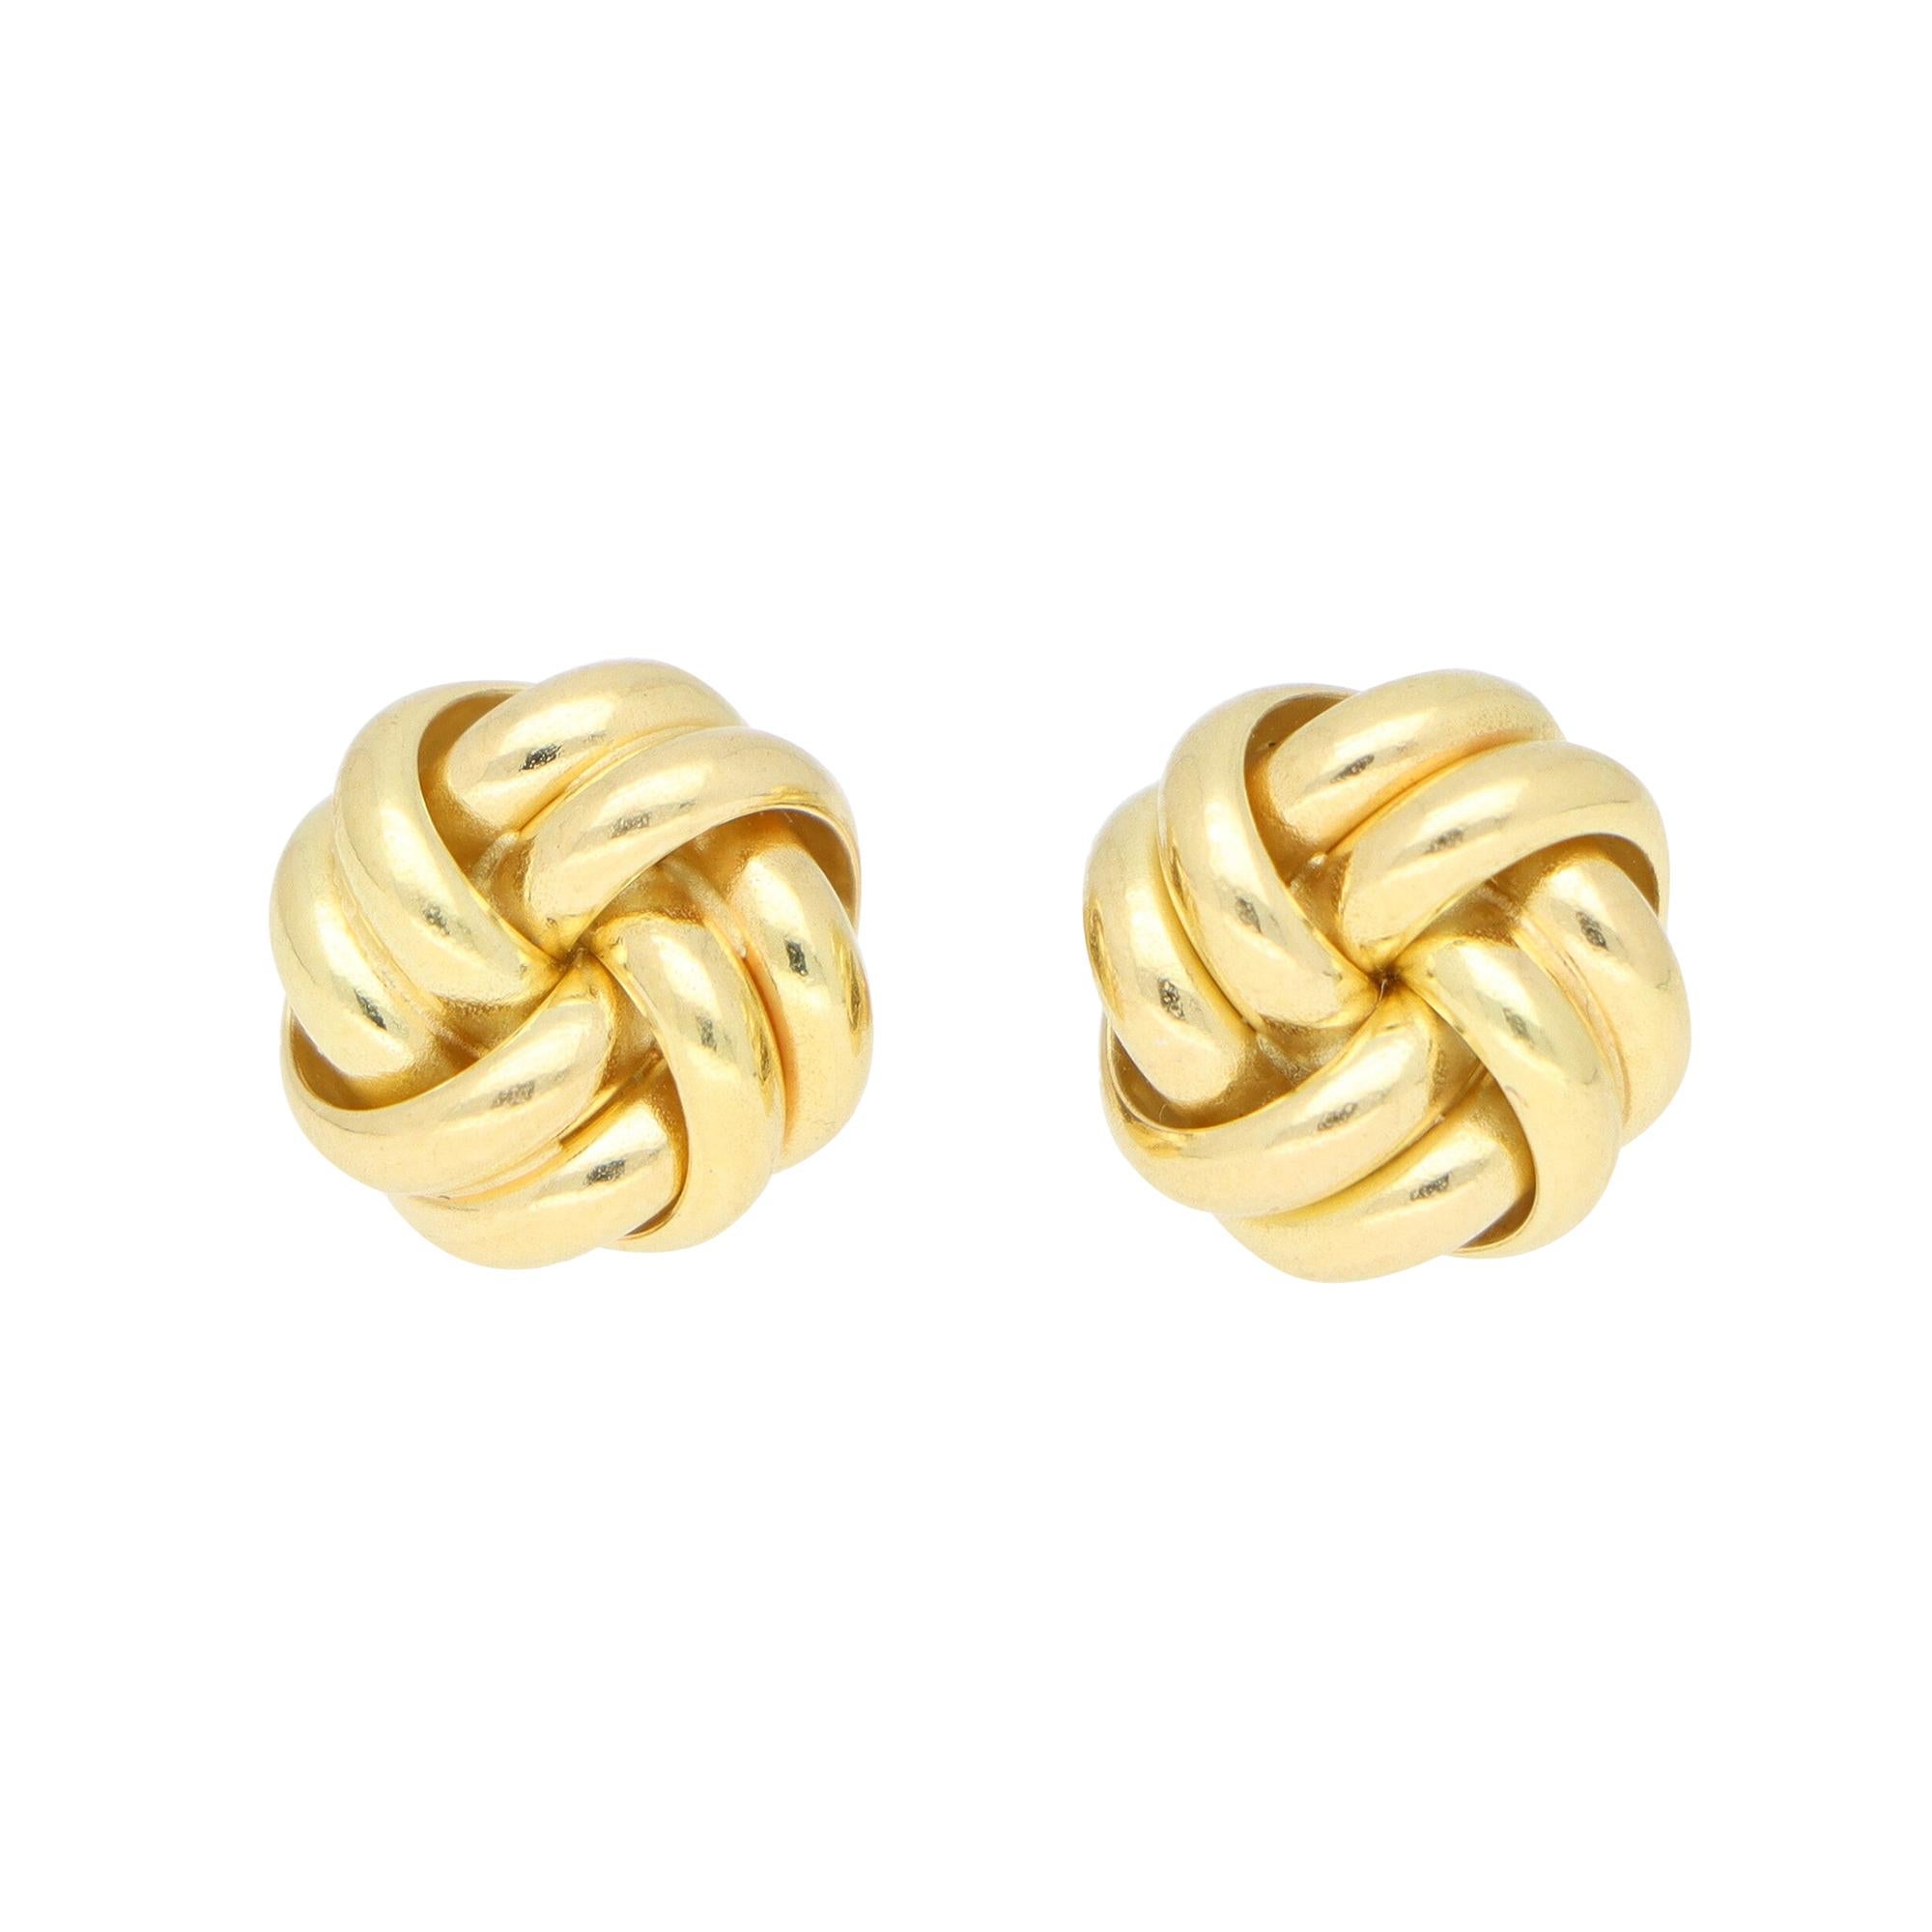 Woven Knot Stud Earrings Set in 18k Yellow Gold